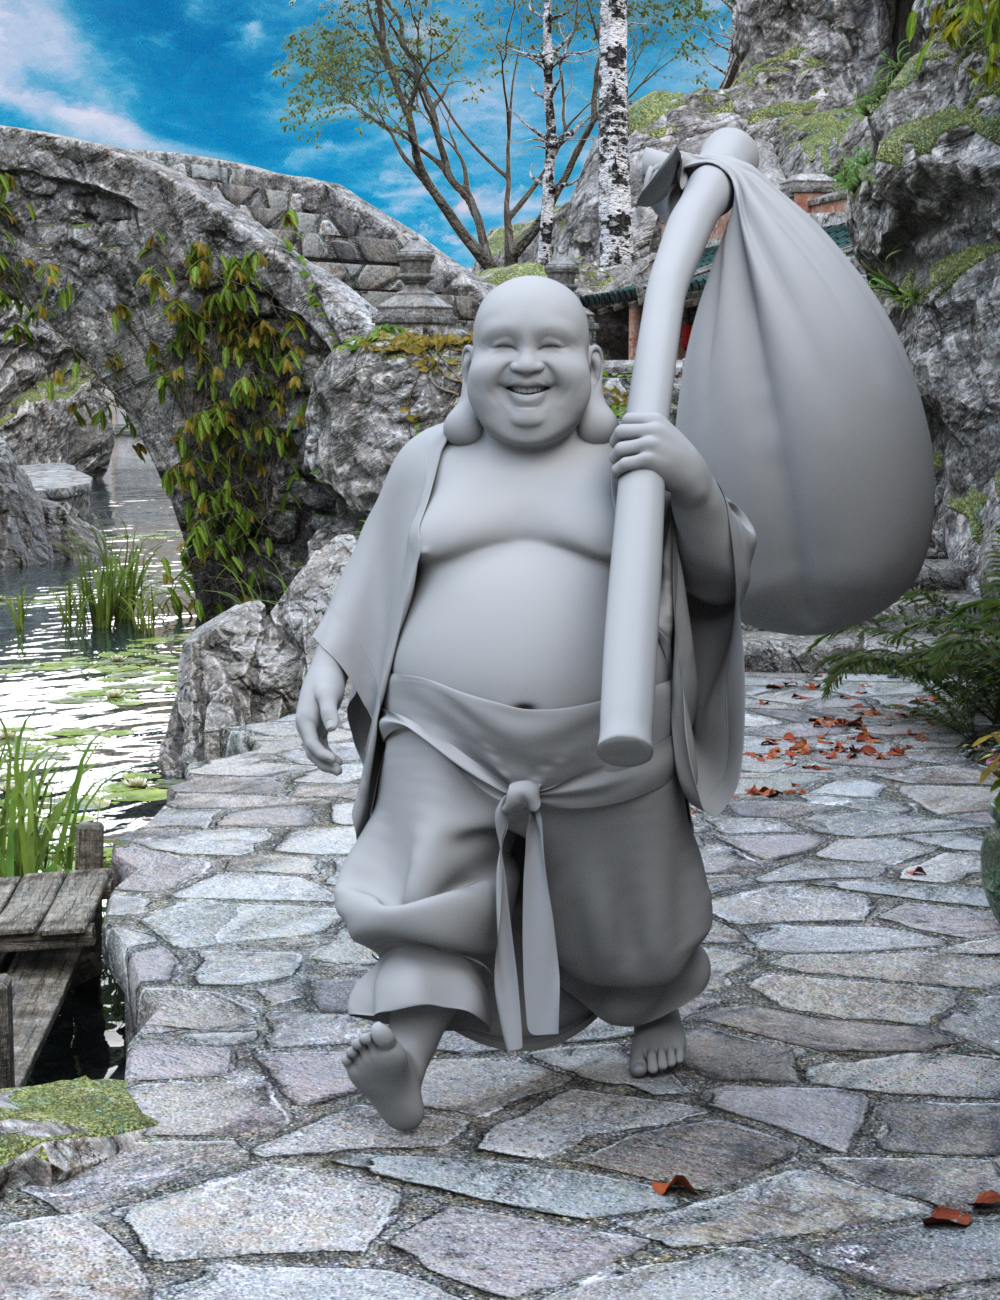 Budai for Genesis 8 Male by: GuruvarPixelTizzyFit, 3D Models by Daz 3D